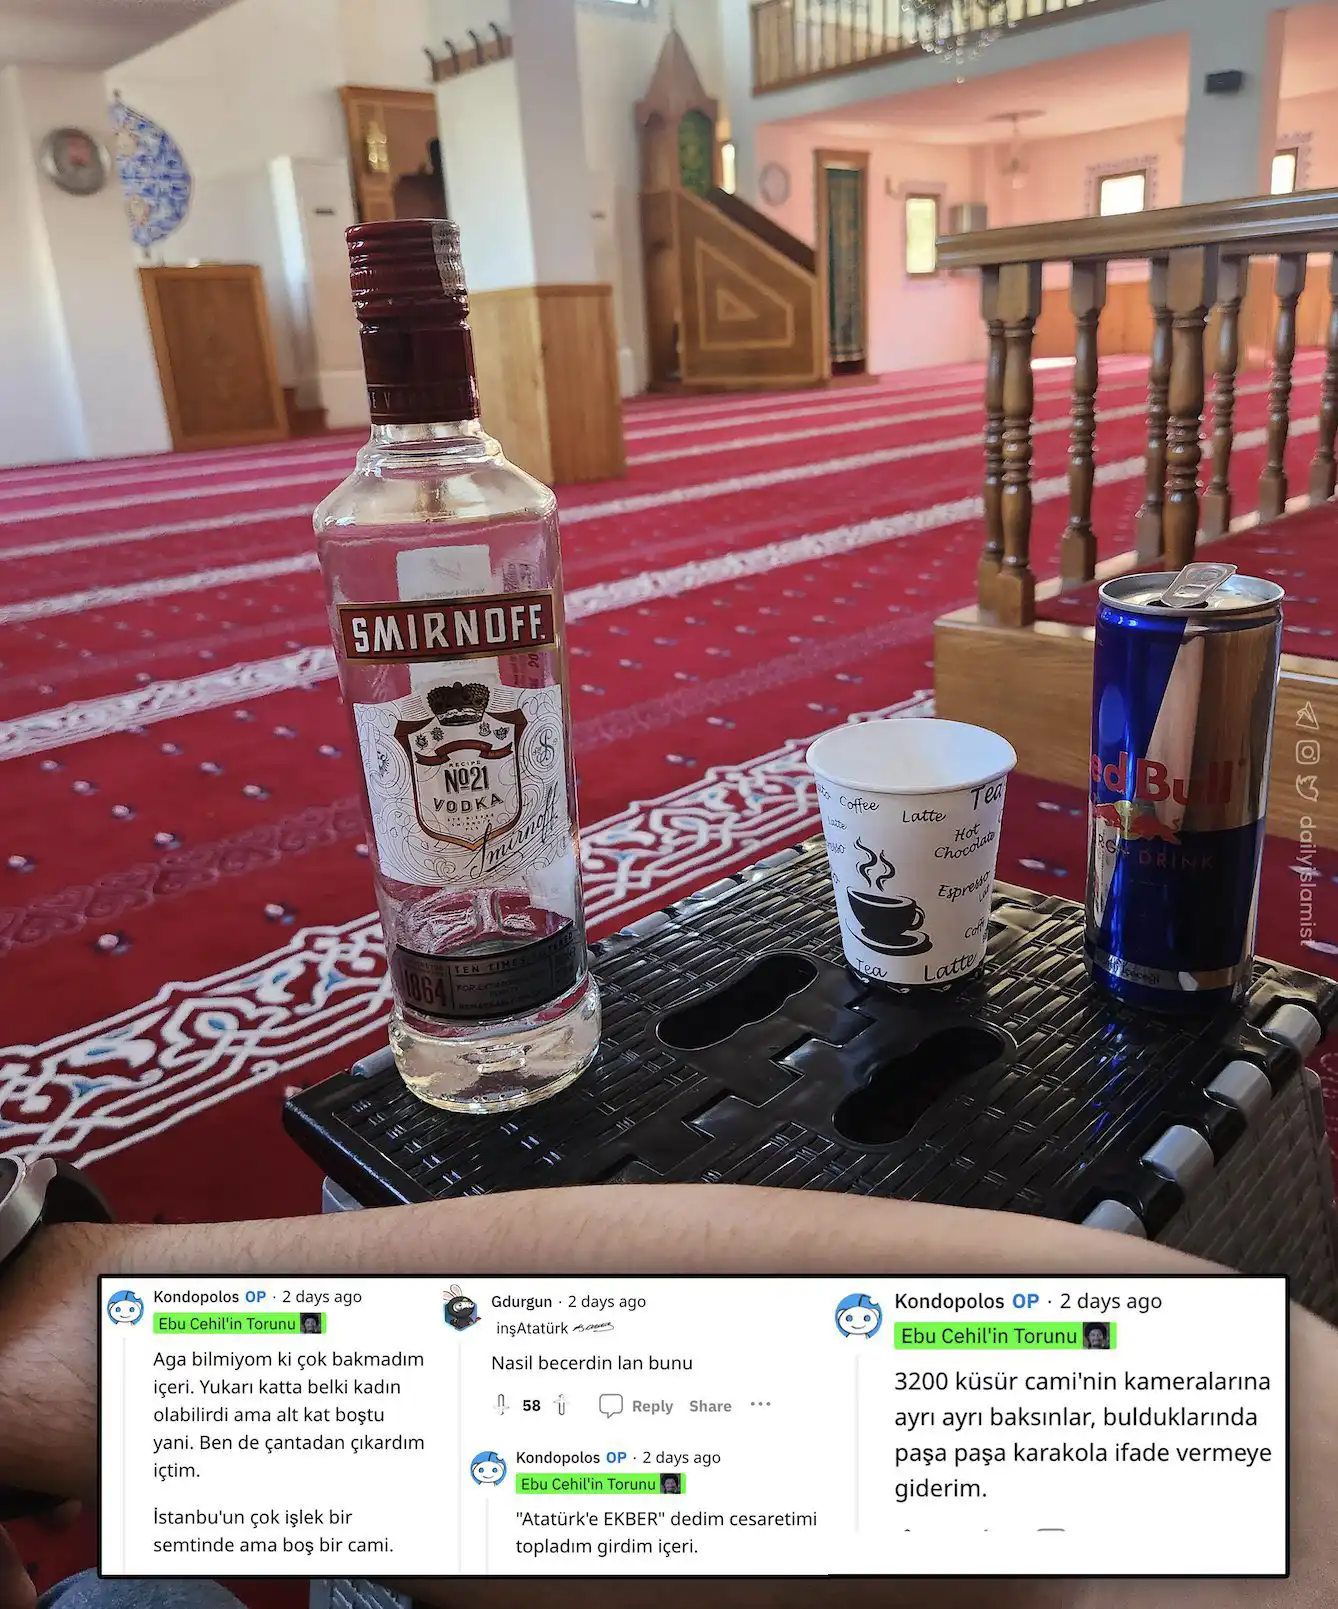 Camiye giren şahıs, alkol tükettiği fotoğrafı "Atatürk'e Ekber" diyerek paylaştı - Bir Reddit kullanıcısı iki günde önce camide Smirnoff ve Redbull fotoğrafılı provokatif paylaşımı infial yarattı.